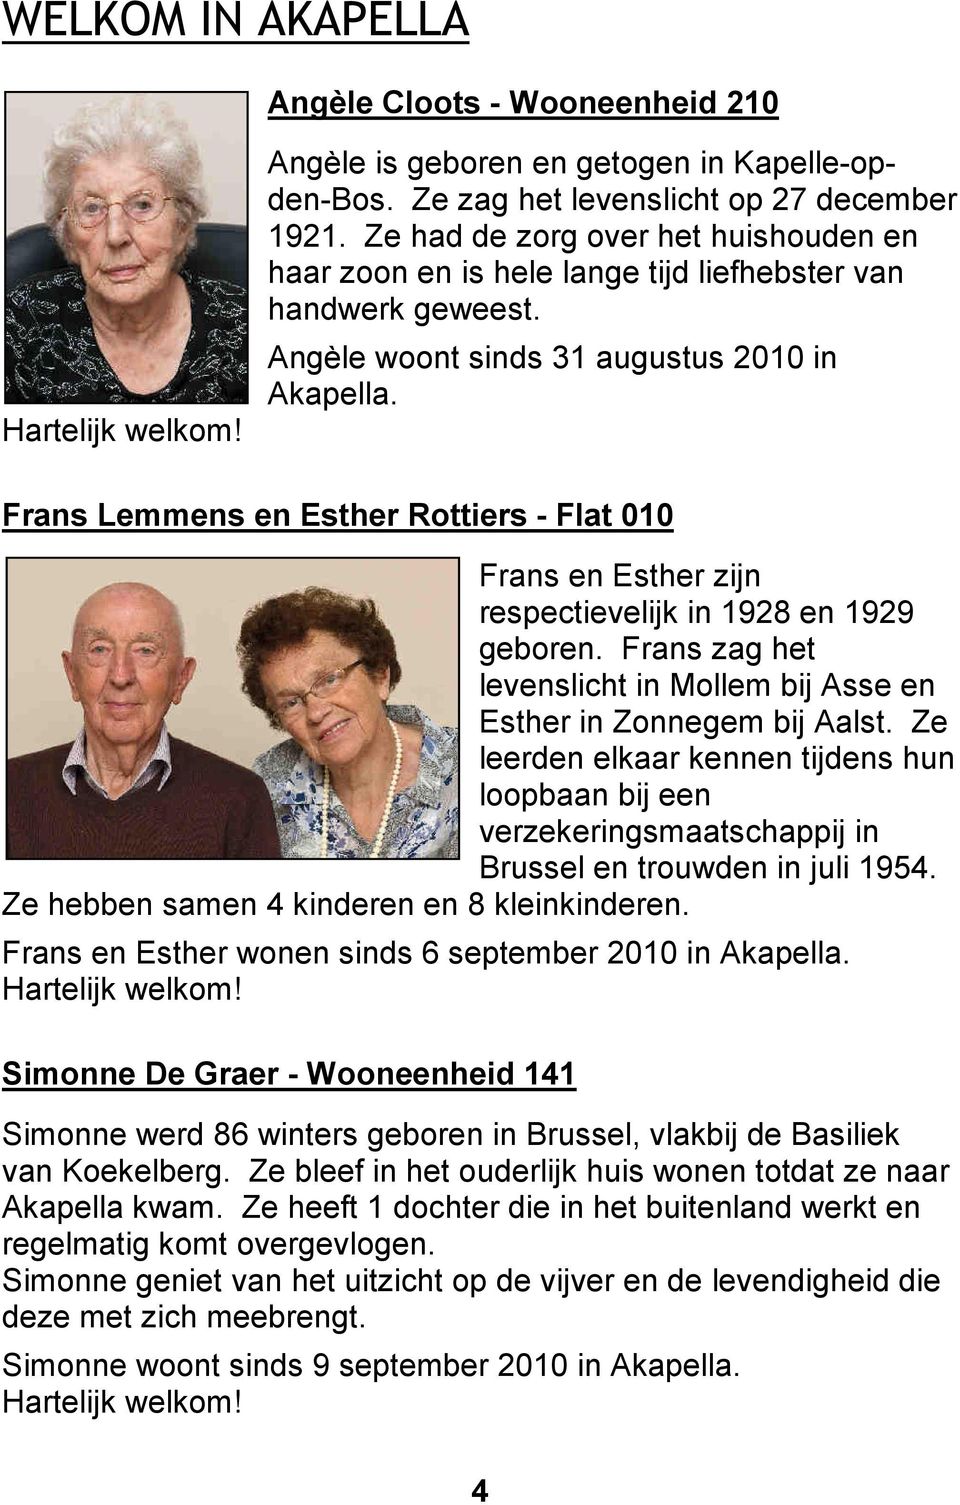 Frans Lemmens en Esther Rottiers - Flat 010 Frans en Esther zijn respectievelijk in 1928 en 1929 geboren. Frans zag het levenslicht in Mollem bij Asse en Esther in Zonnegem bij Aalst.